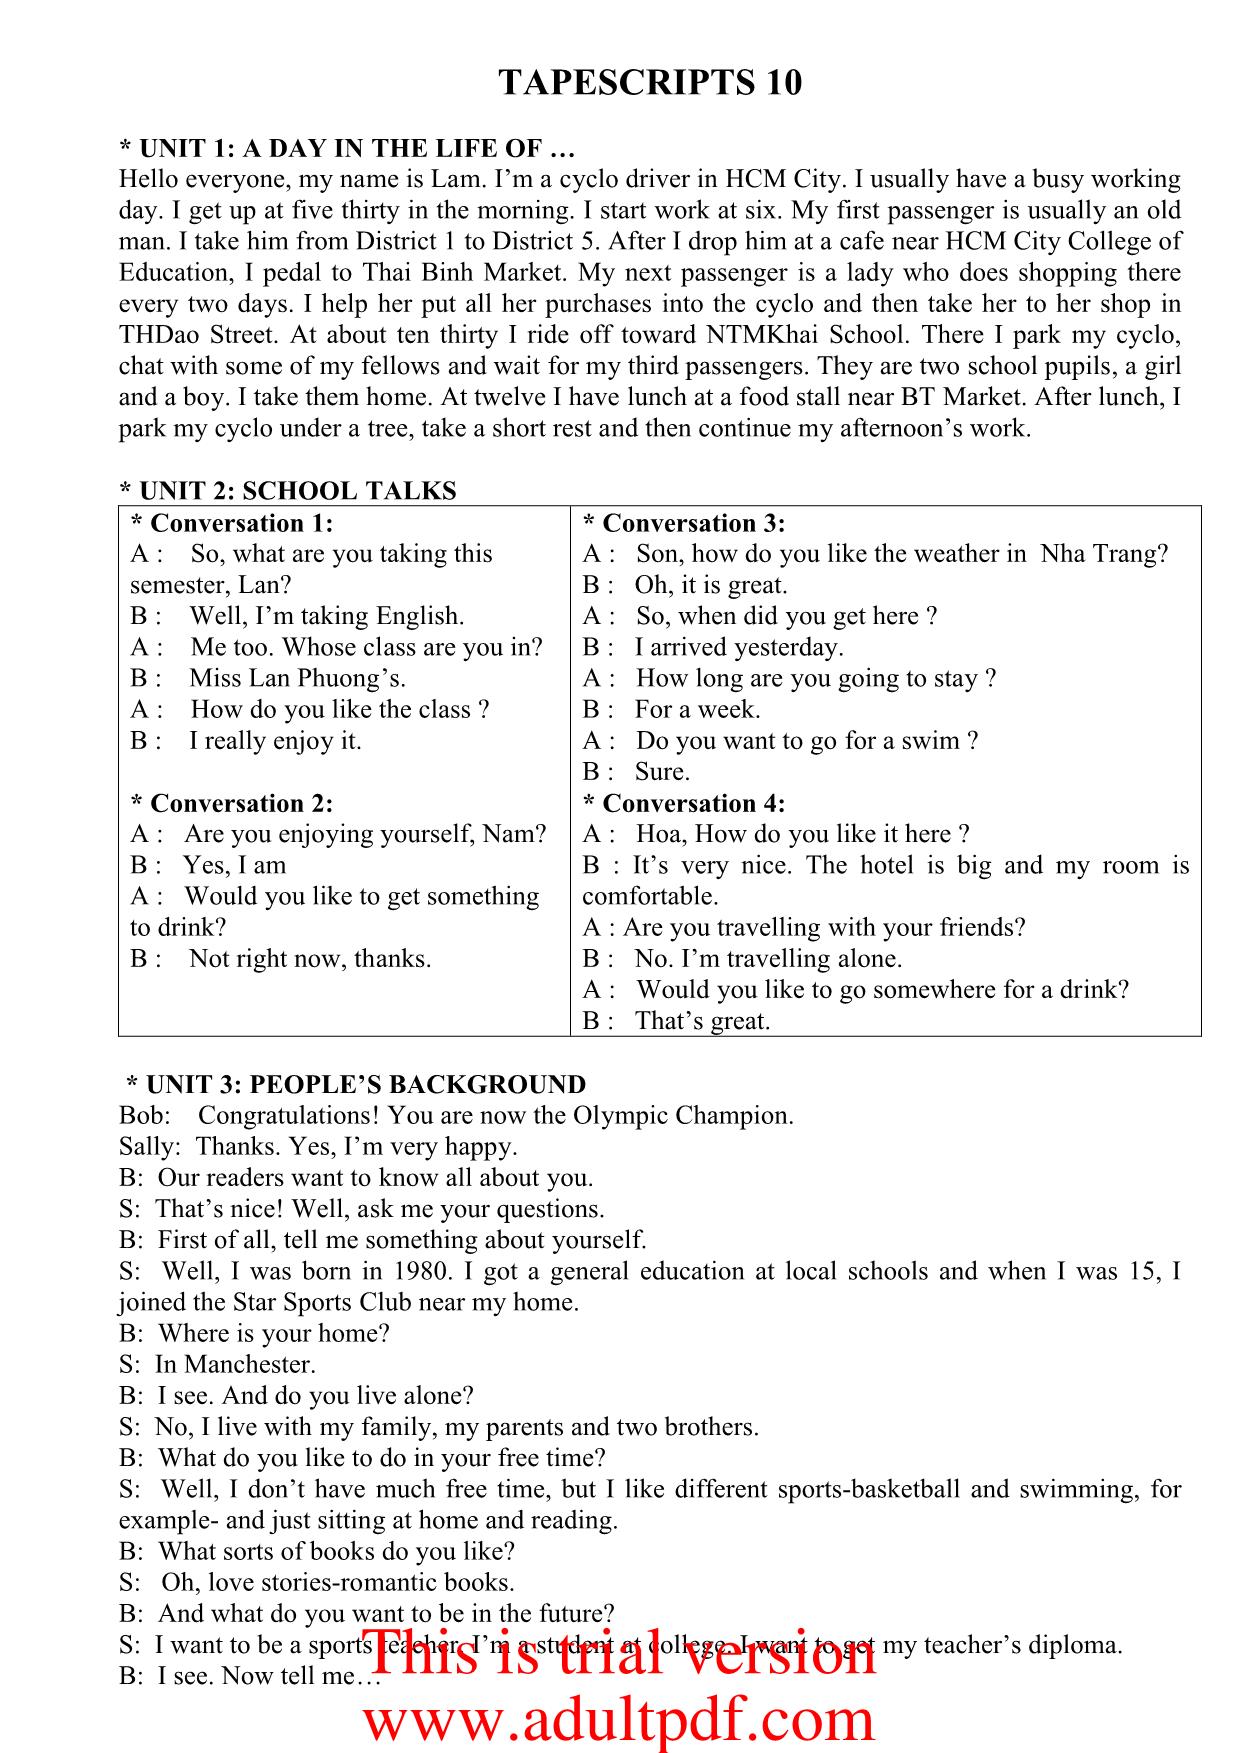 Tiếng Anh - Tapescripts 10 trang 1